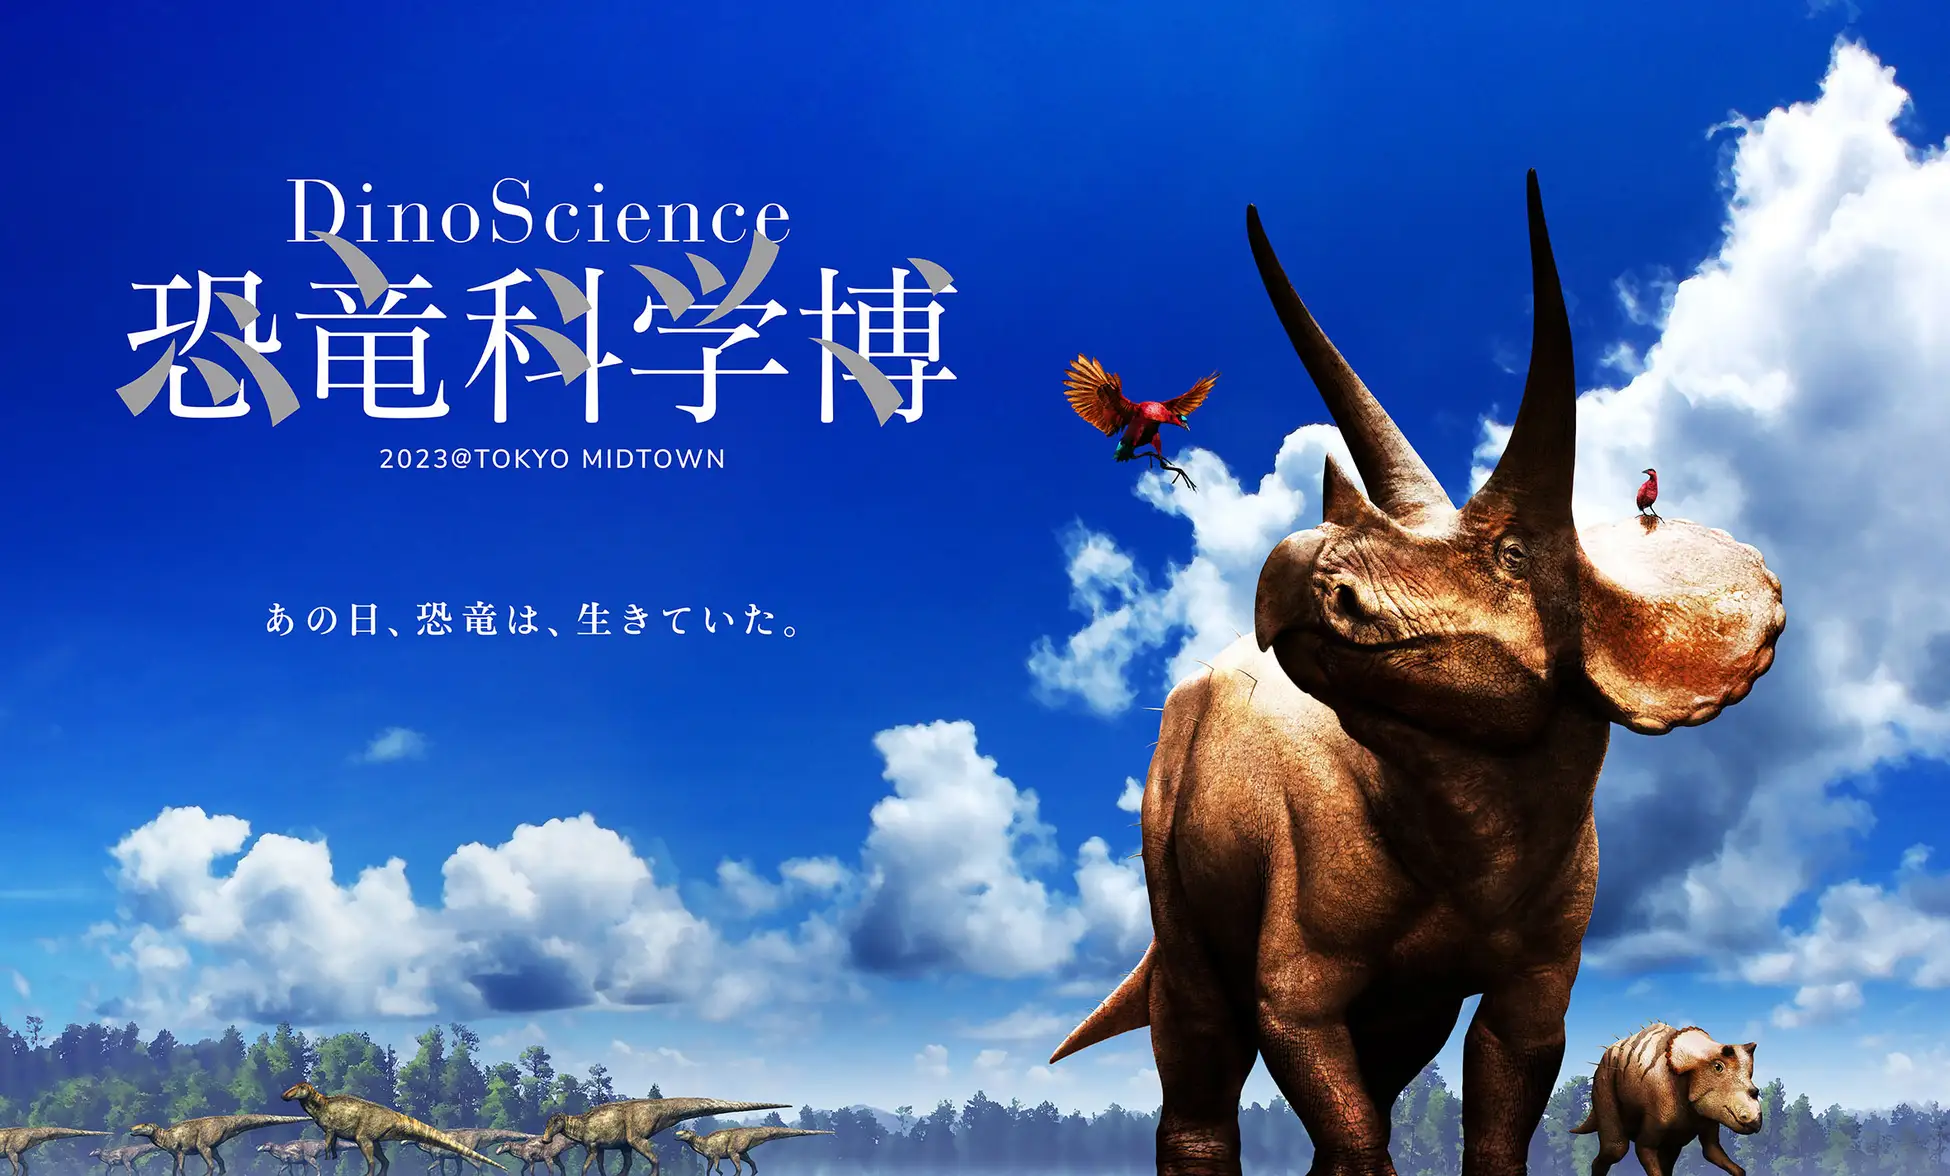 【東京ミッドタウン】＼DinoScience 恐竜科学博 2023@TOKYO MIDTOWN／前売チケット発売中！